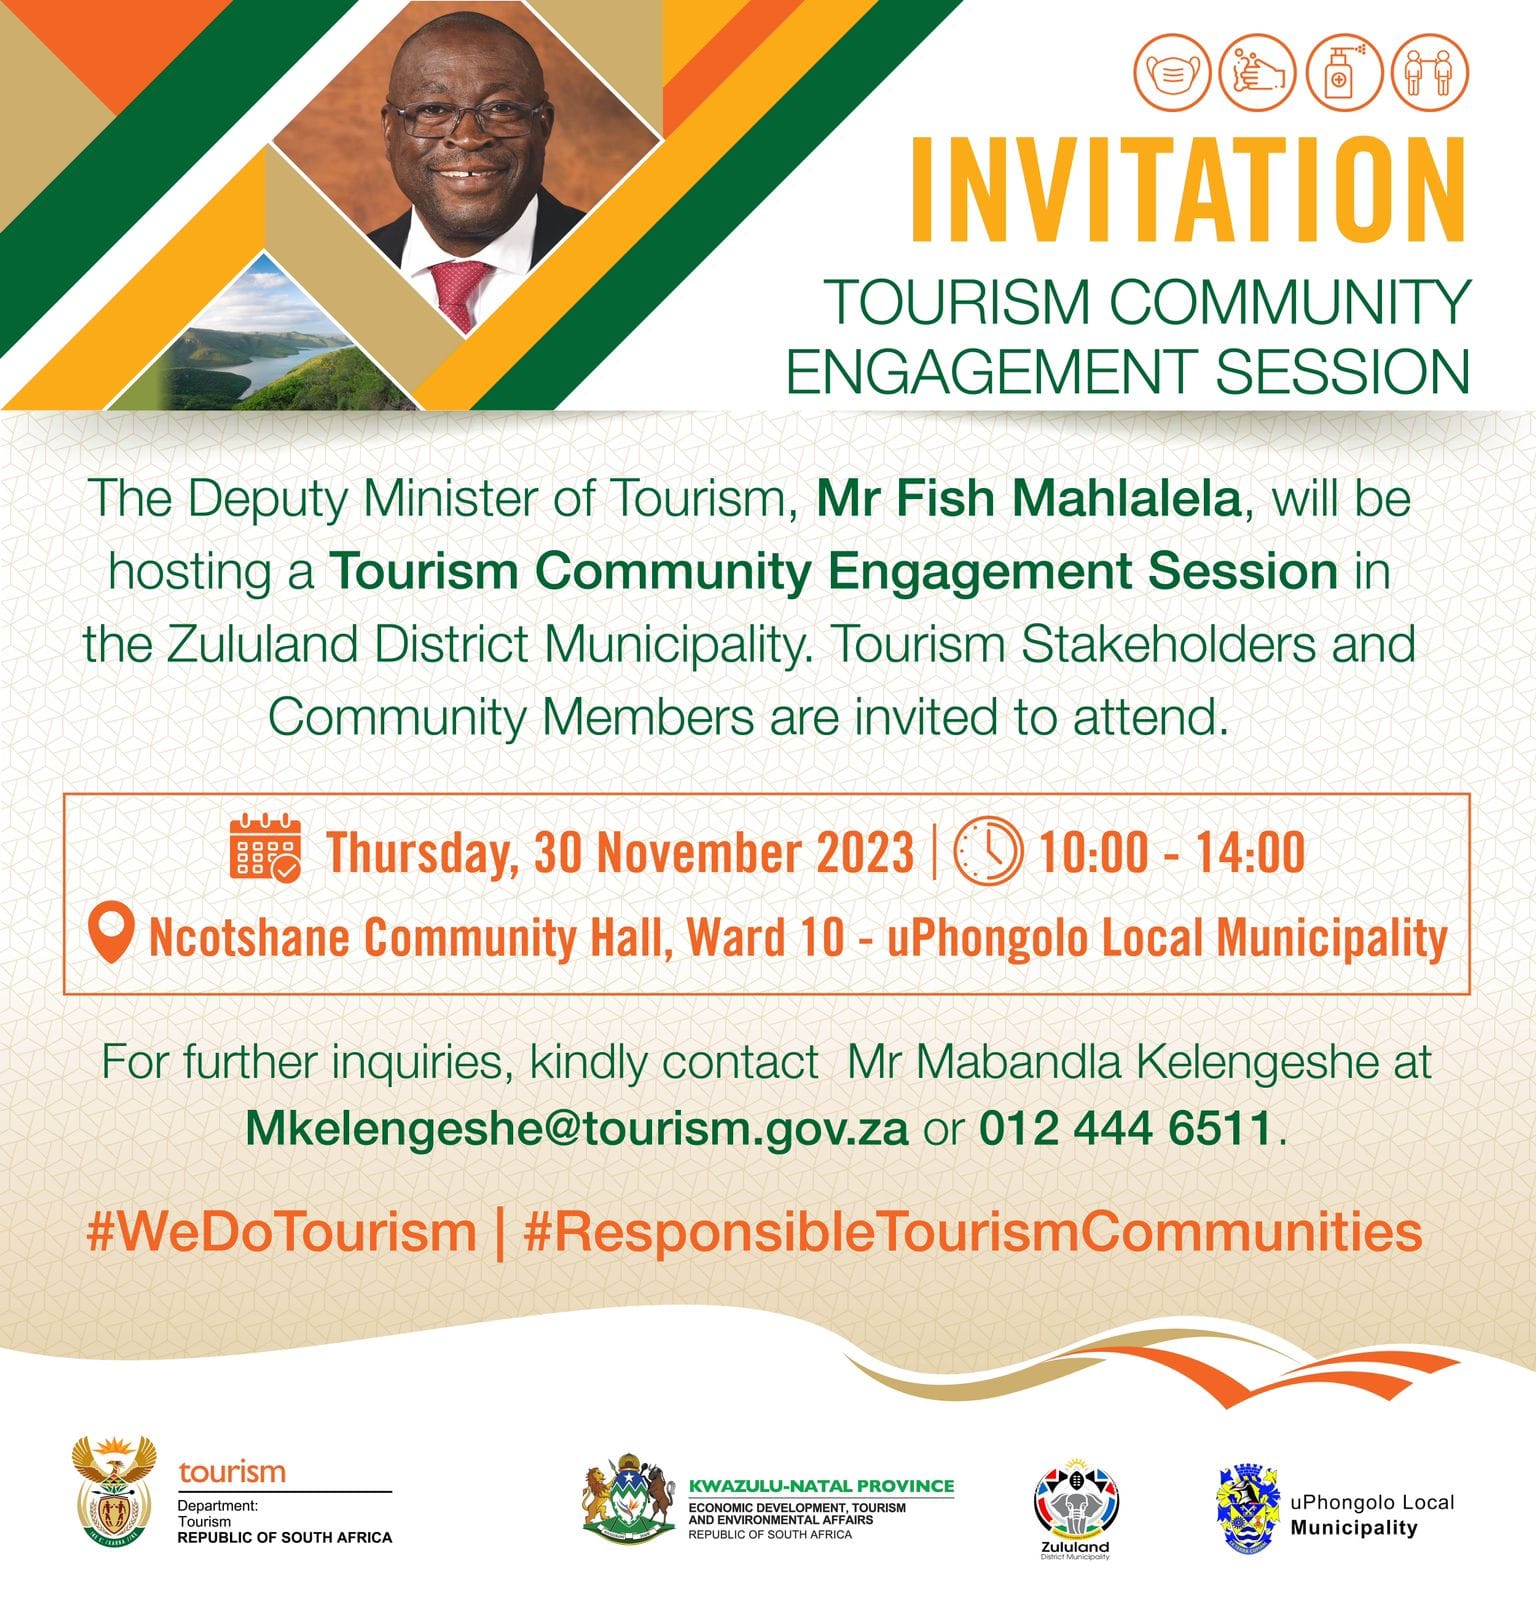 Advancing tourism in the Zululand District Municipality - KwaZulu-Natal Province 